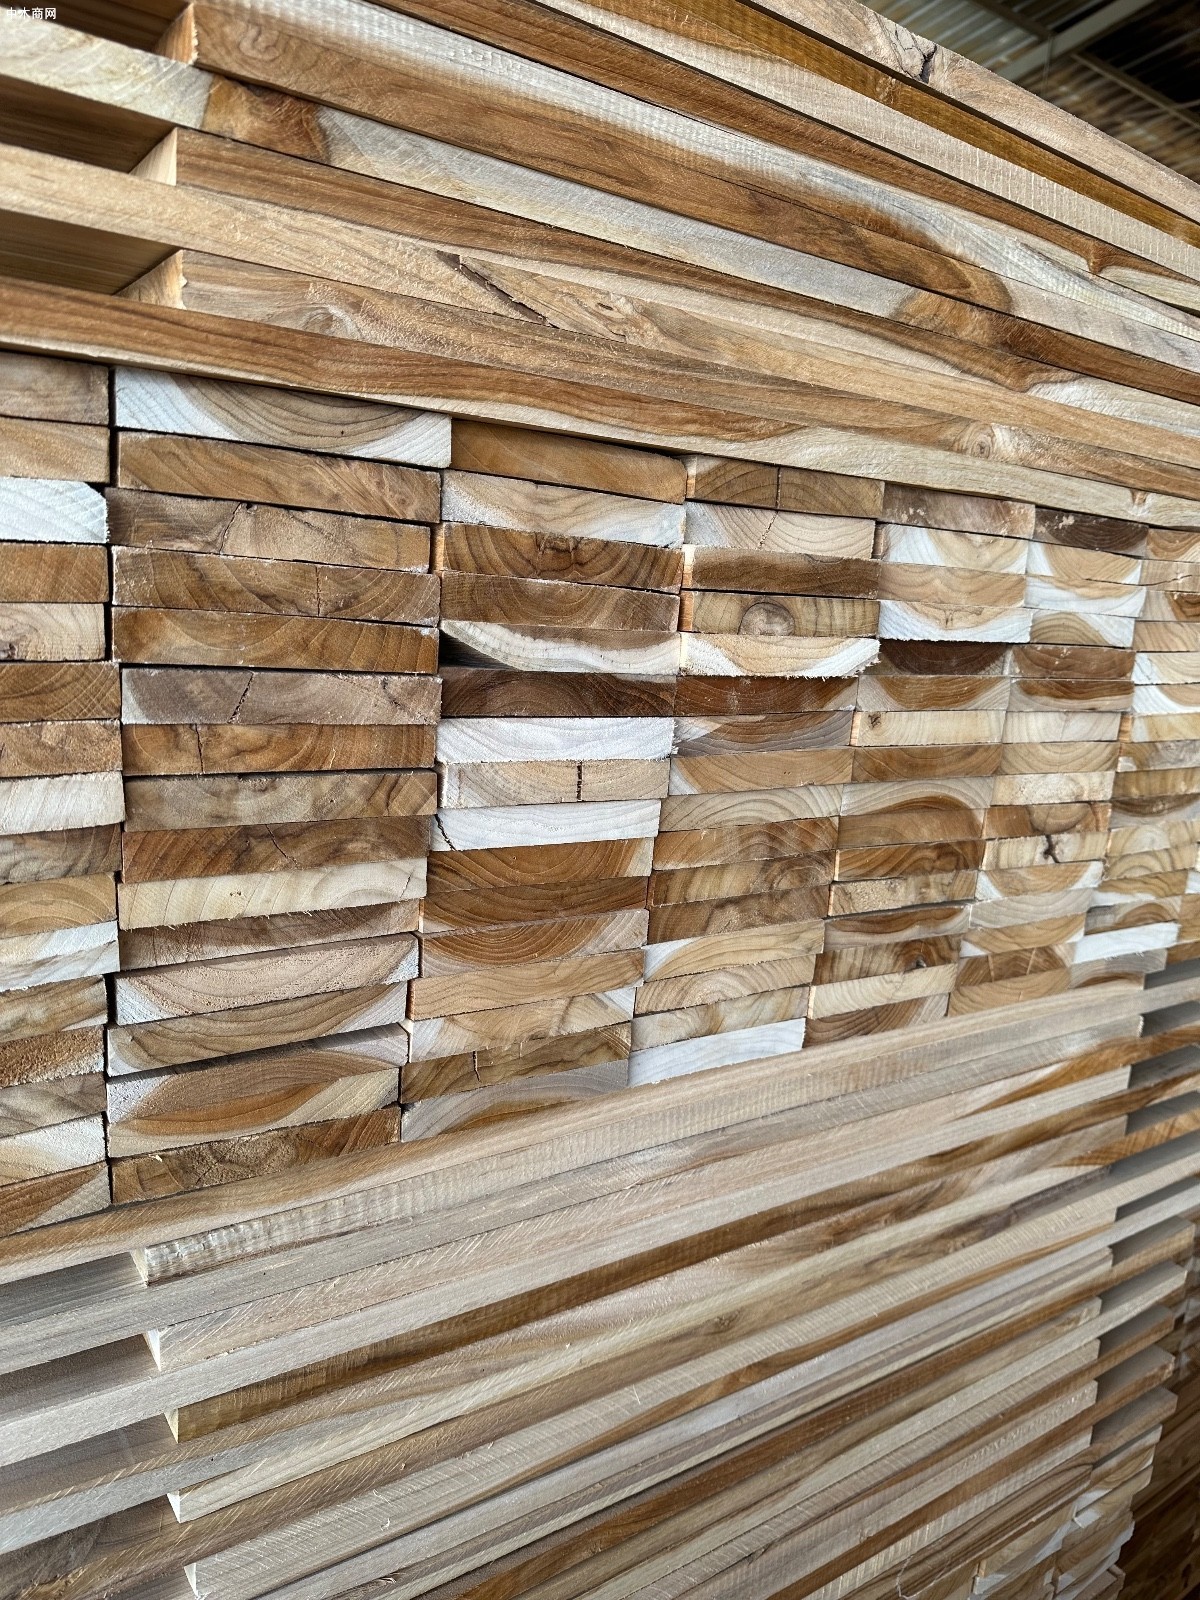 呼伦贝尔市现有木材加工企业78户